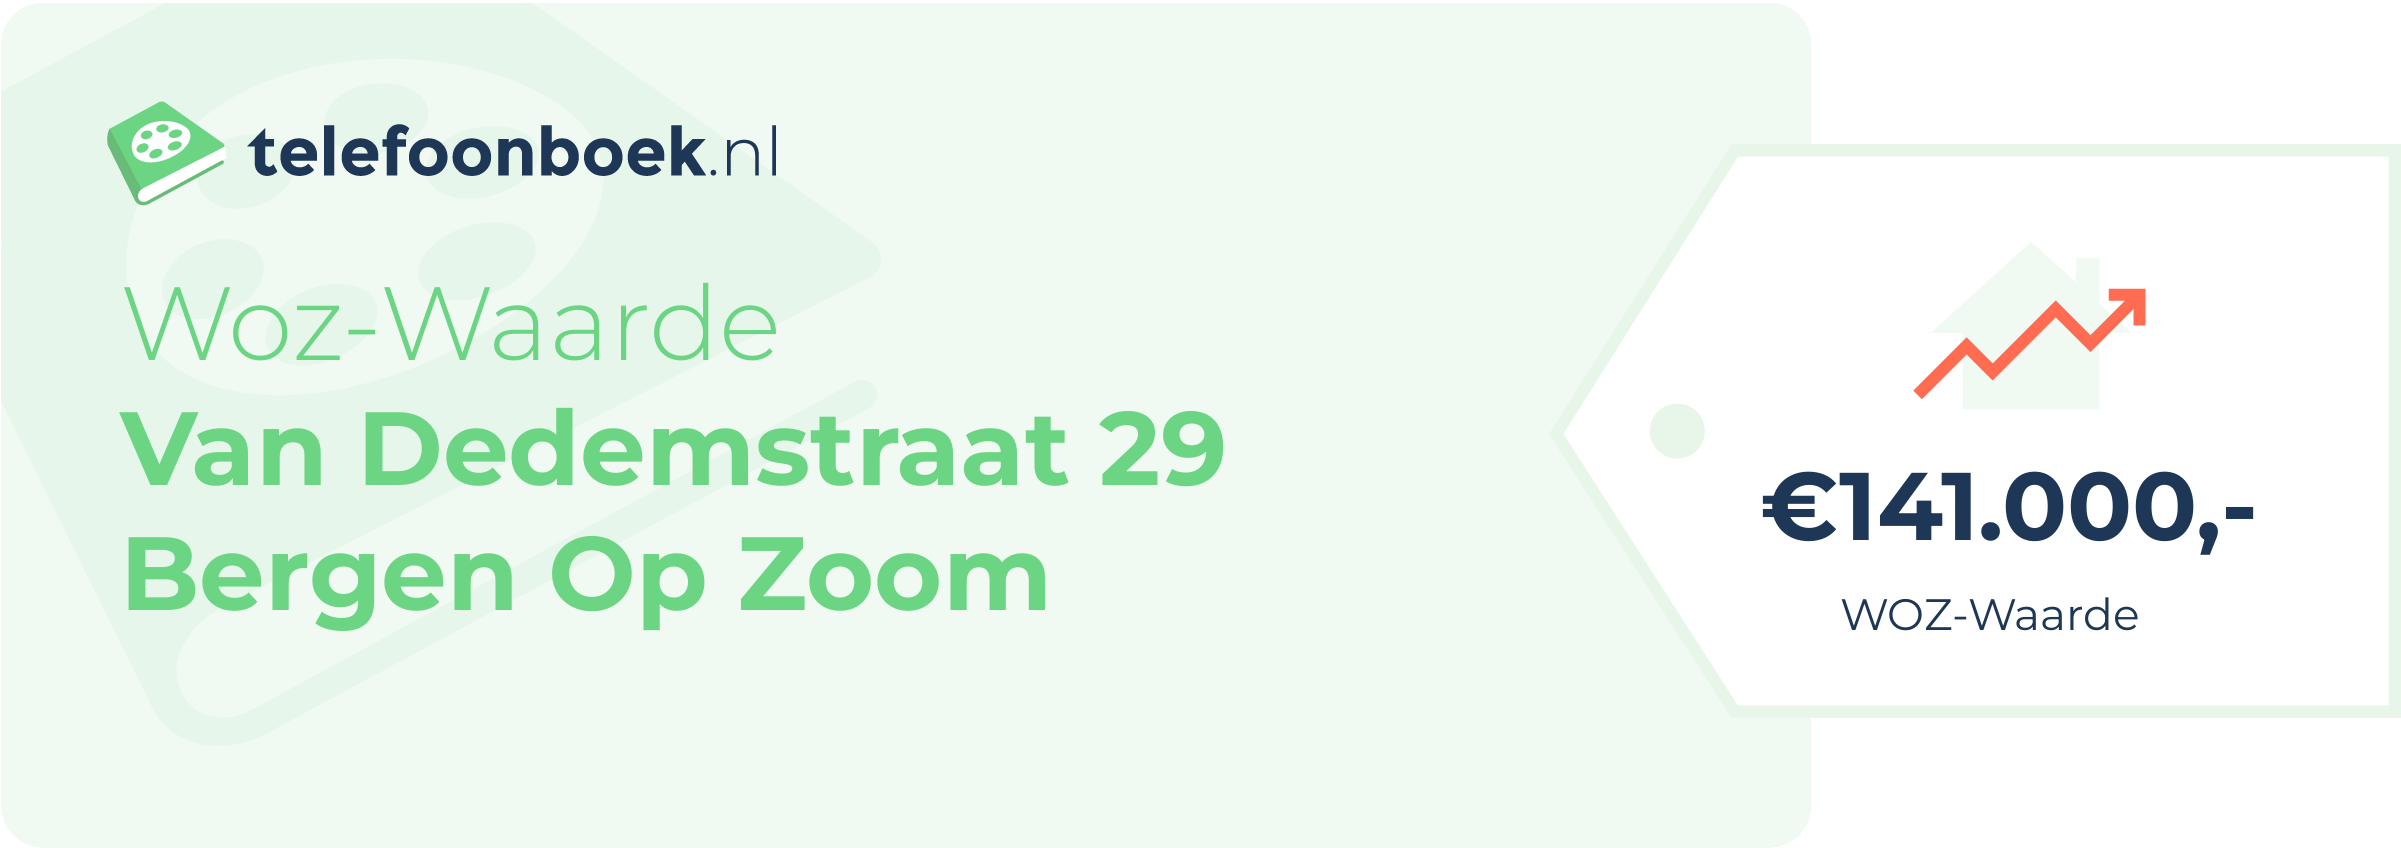 WOZ-waarde Van Dedemstraat 29 Bergen Op Zoom